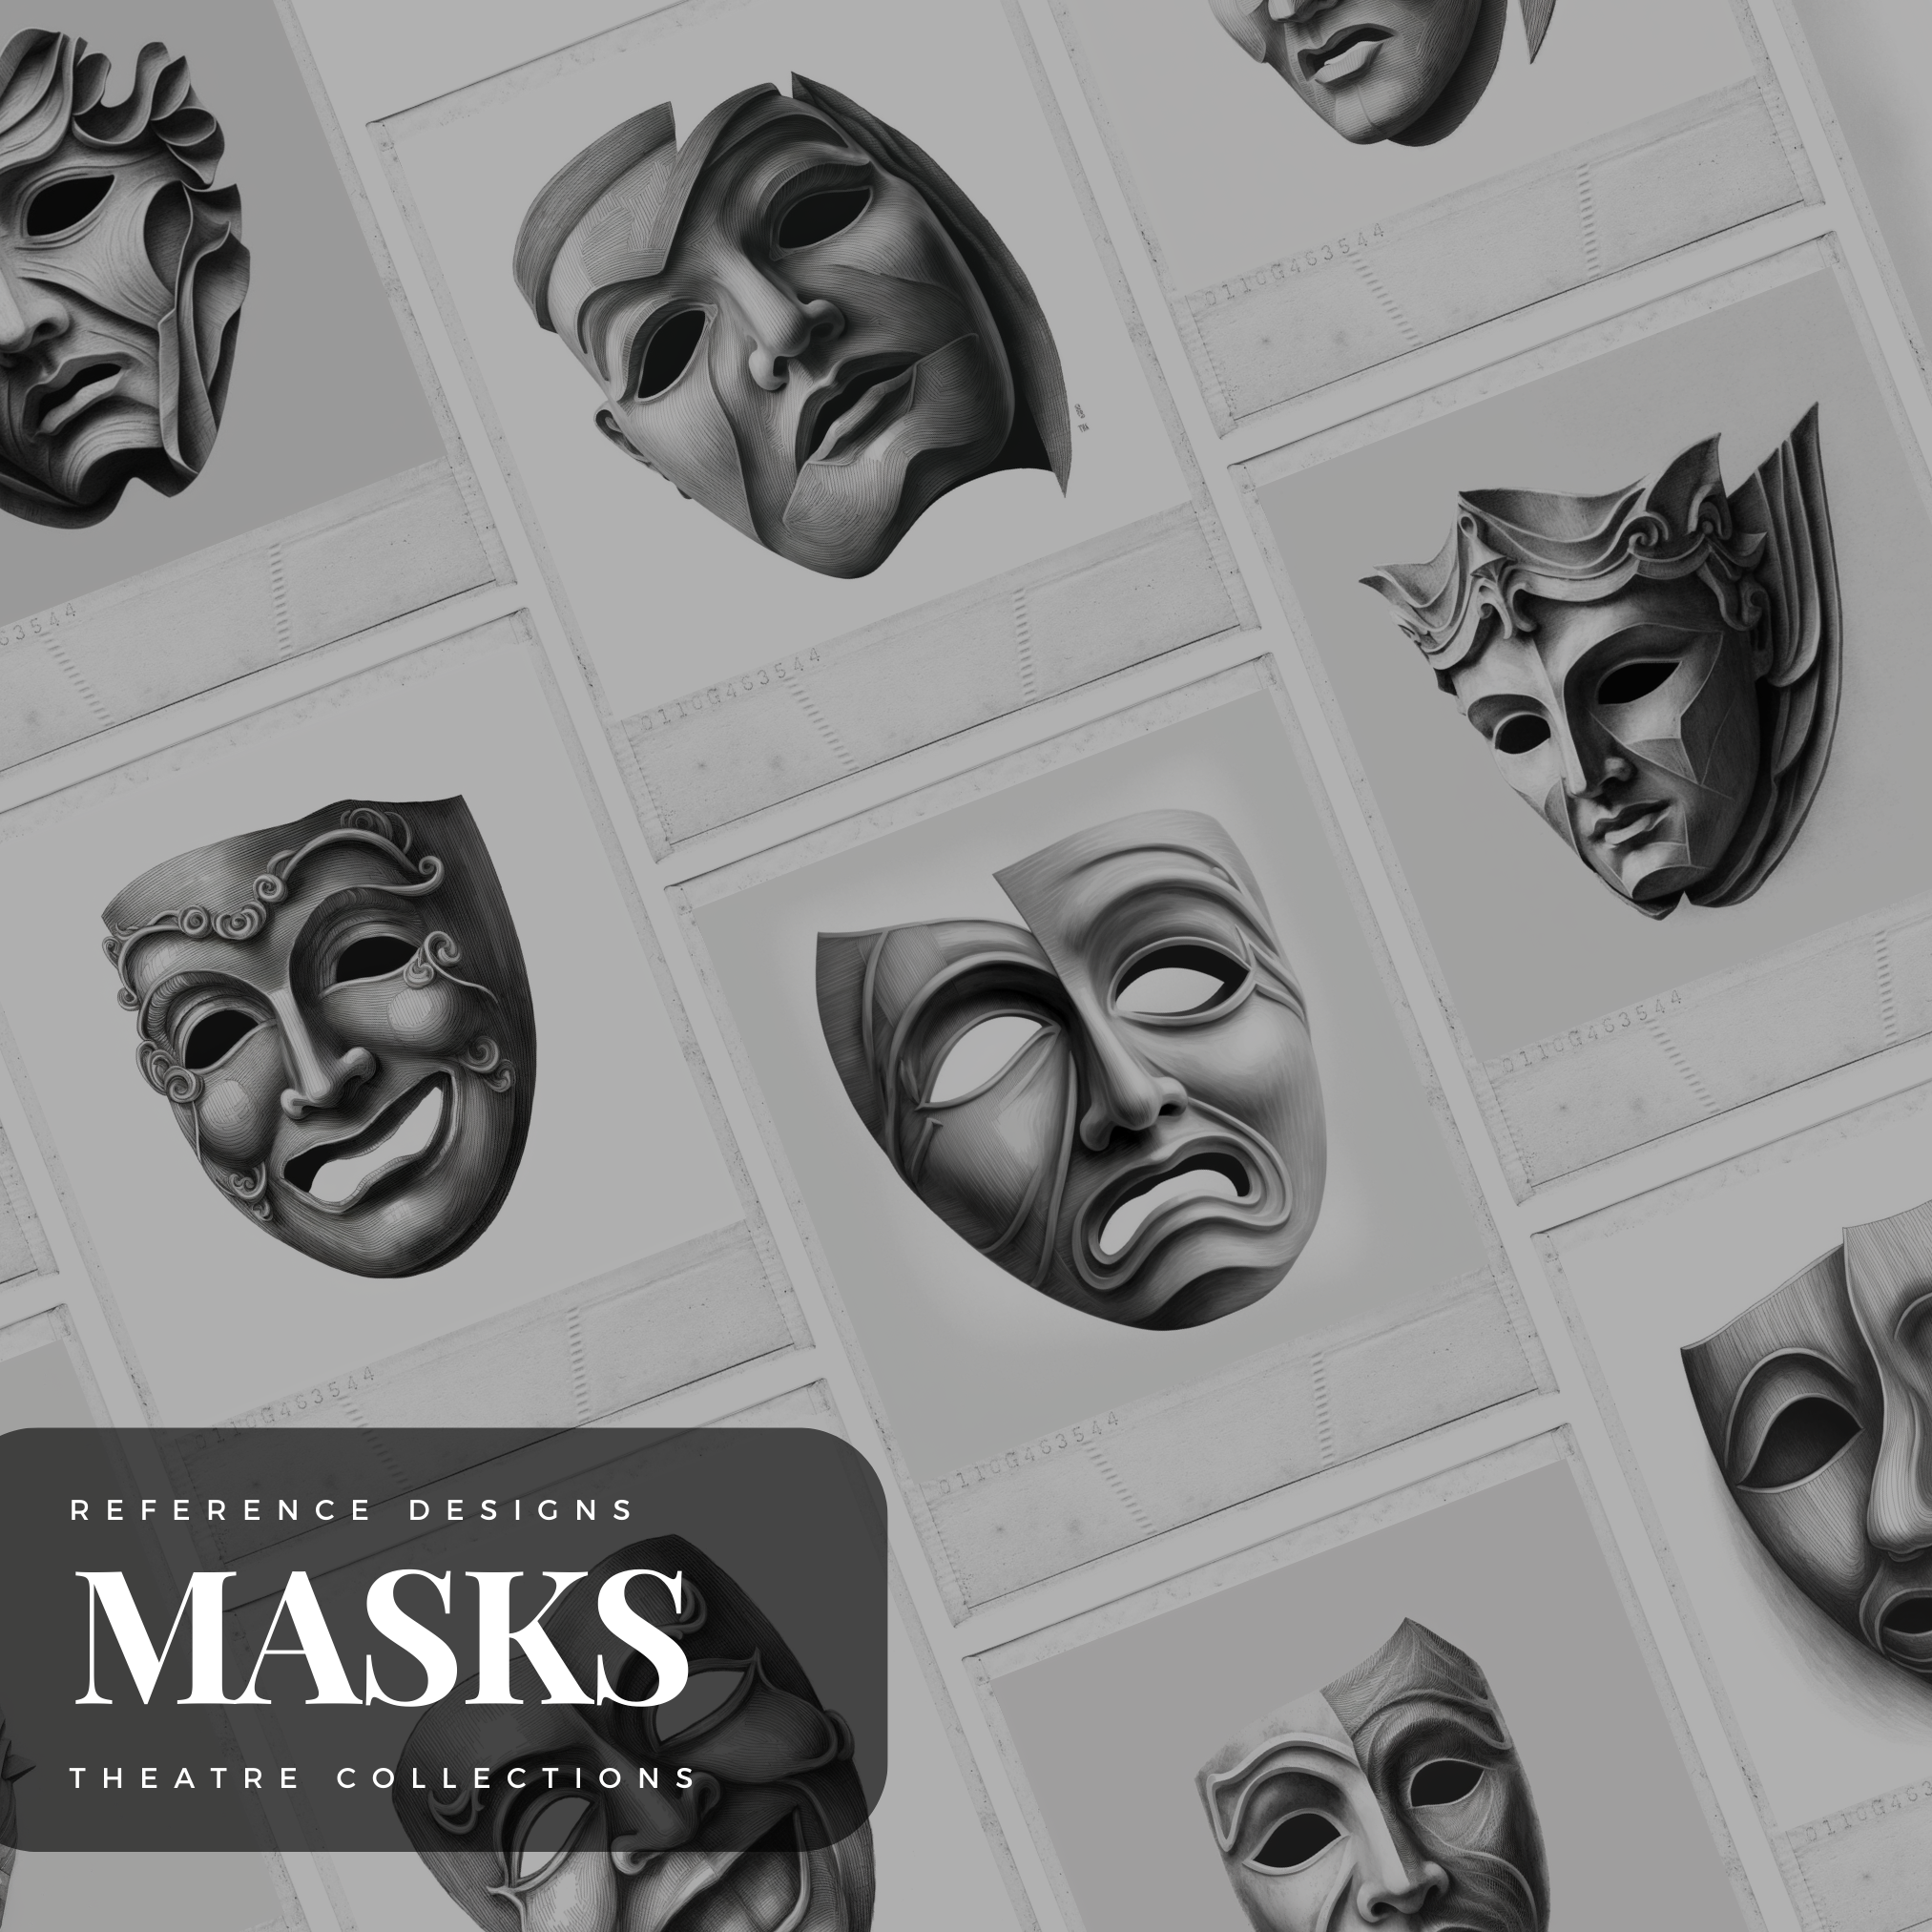 Theatre Masks Digital Reference Design Collection: 50 Procreate & Sketchbook Images